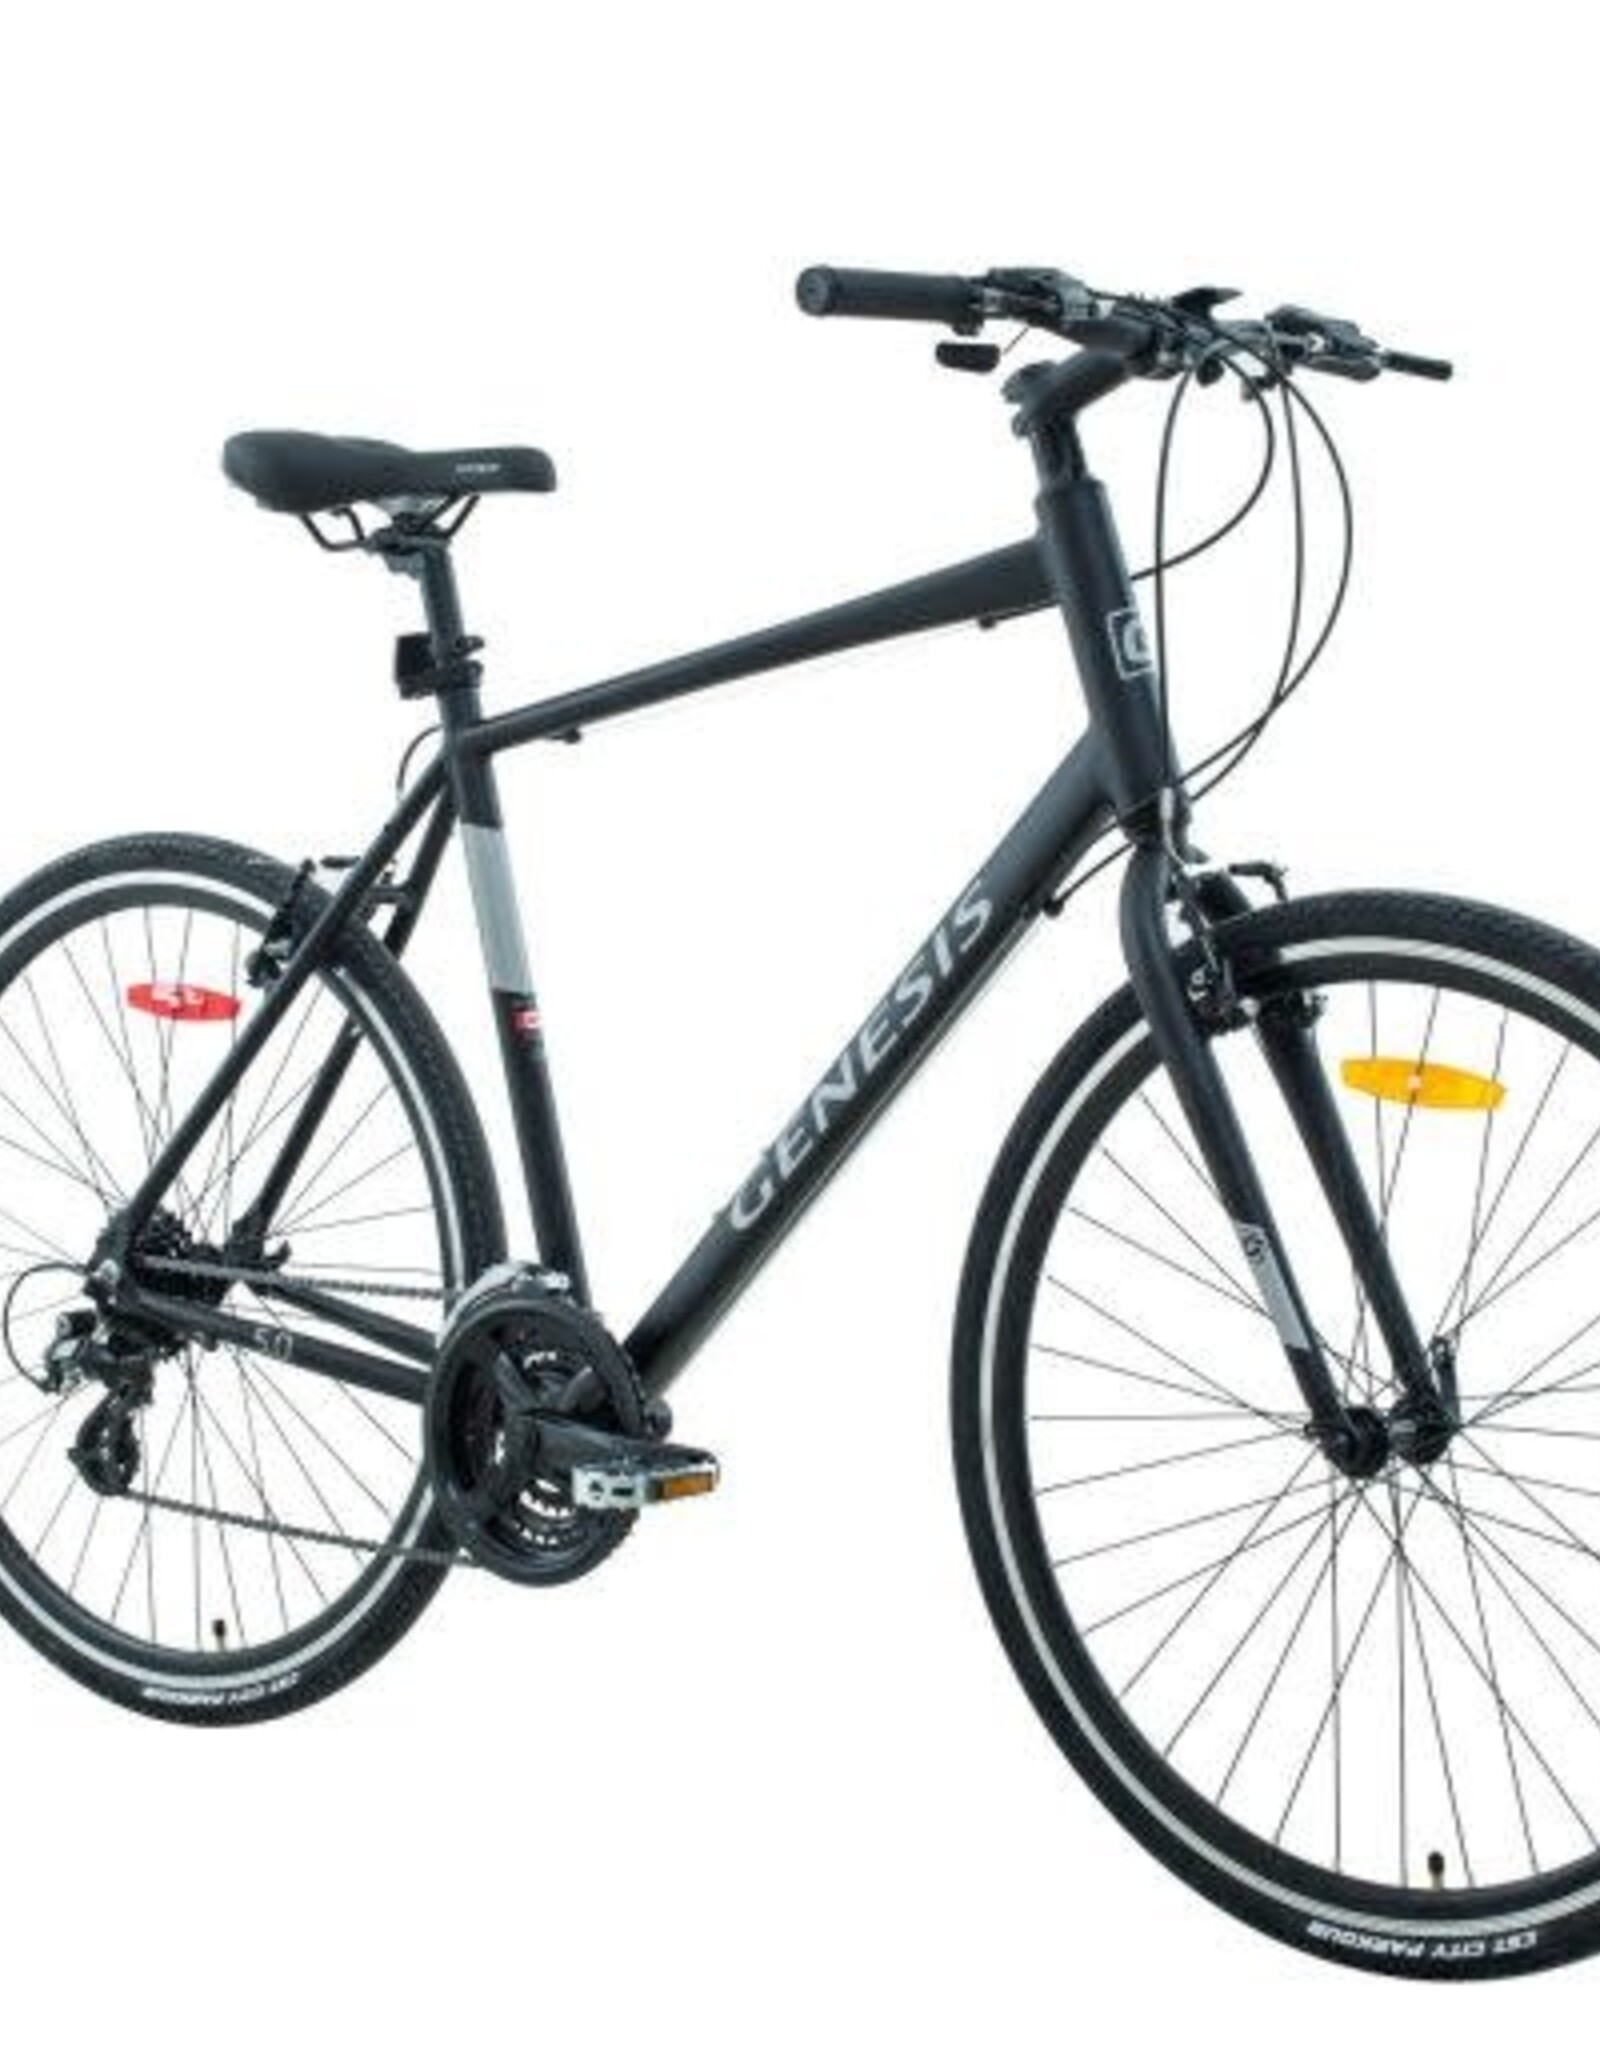 Vélo Genesis Trafik 5.0 18''-24 vitesses noir mat-gris